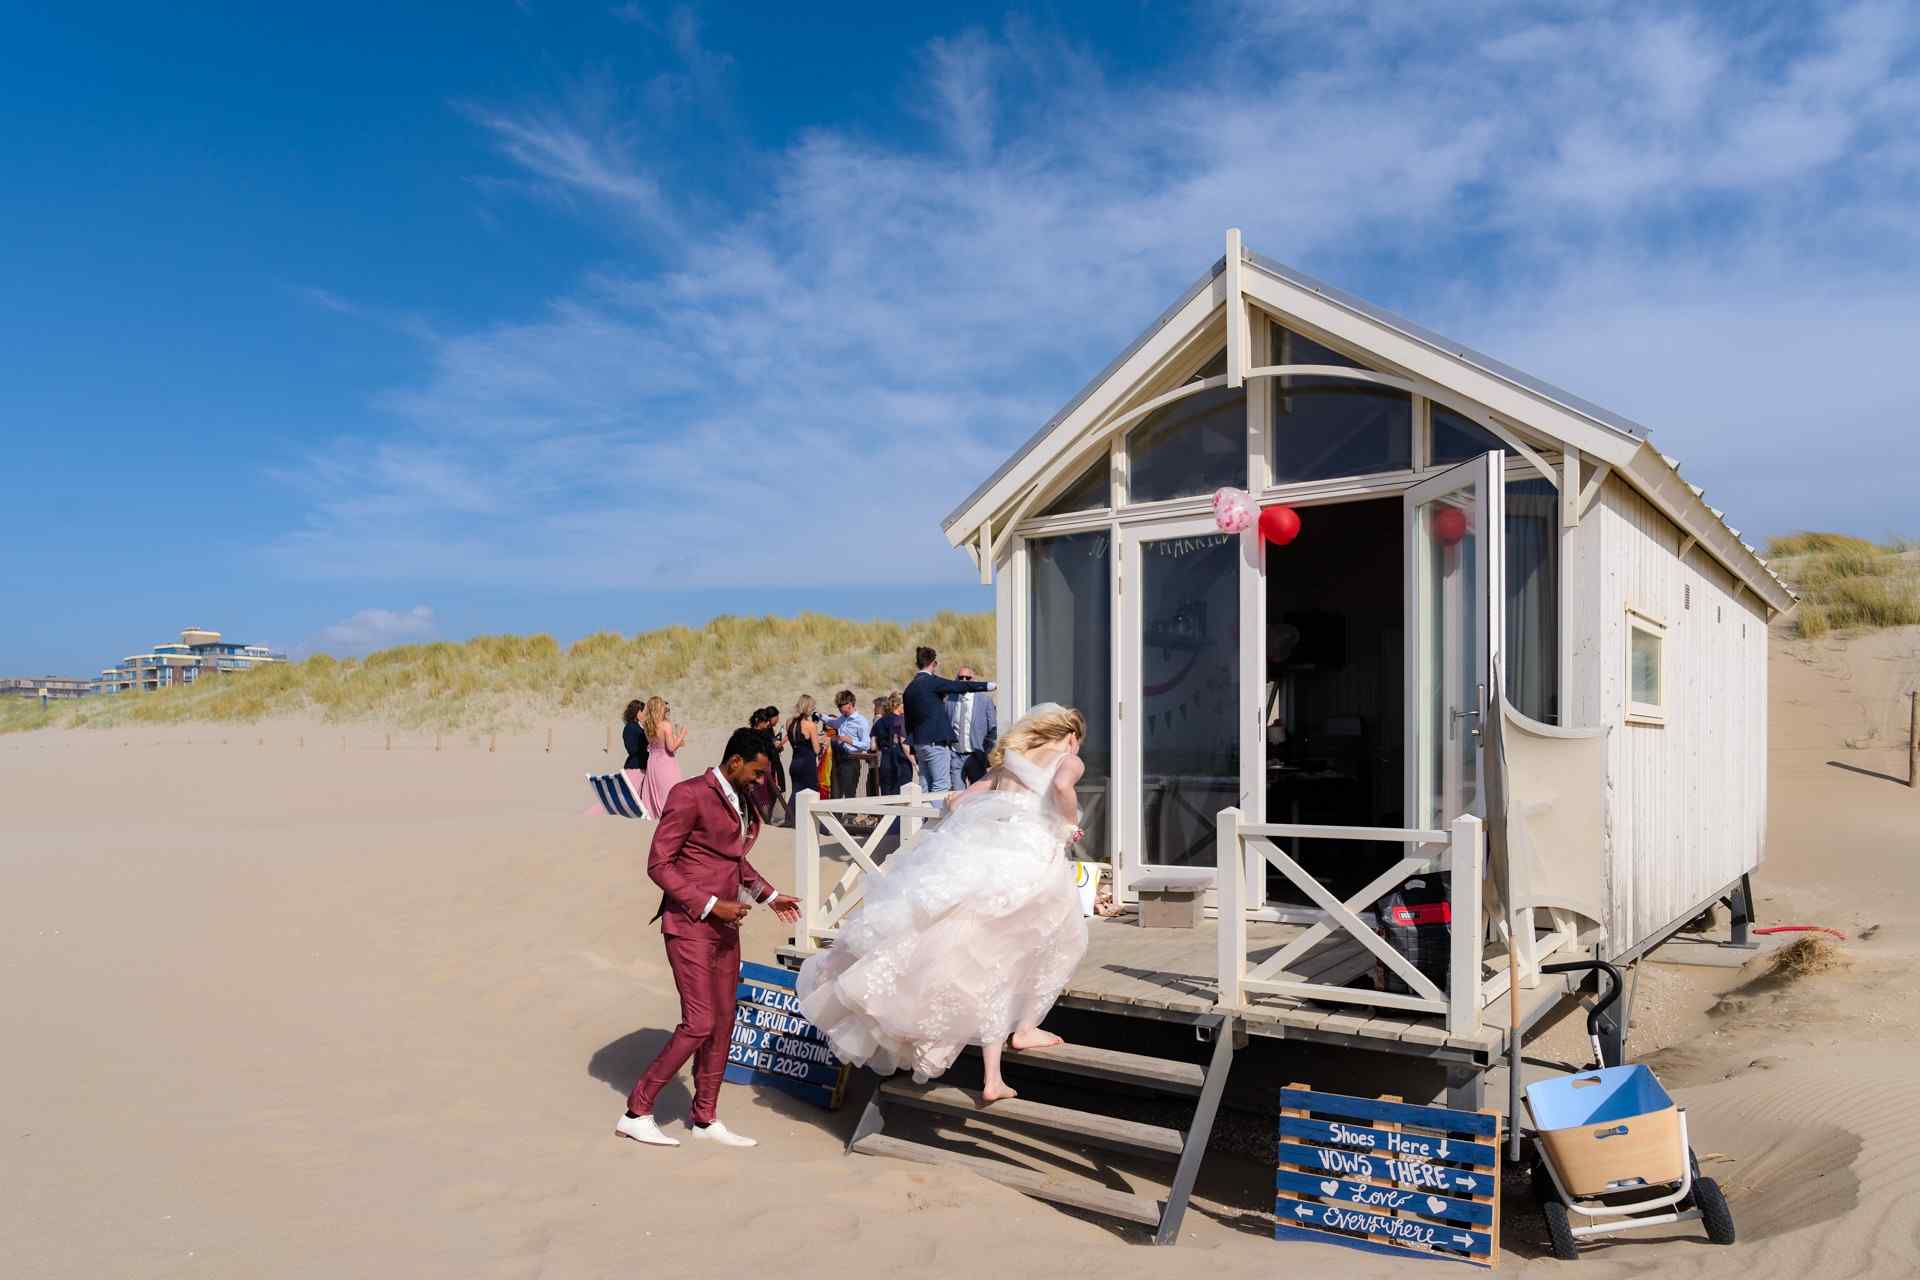 Bruiloft strand Kijkduin, bruidsfotografie door trouwfotograaf Grietje Mesman